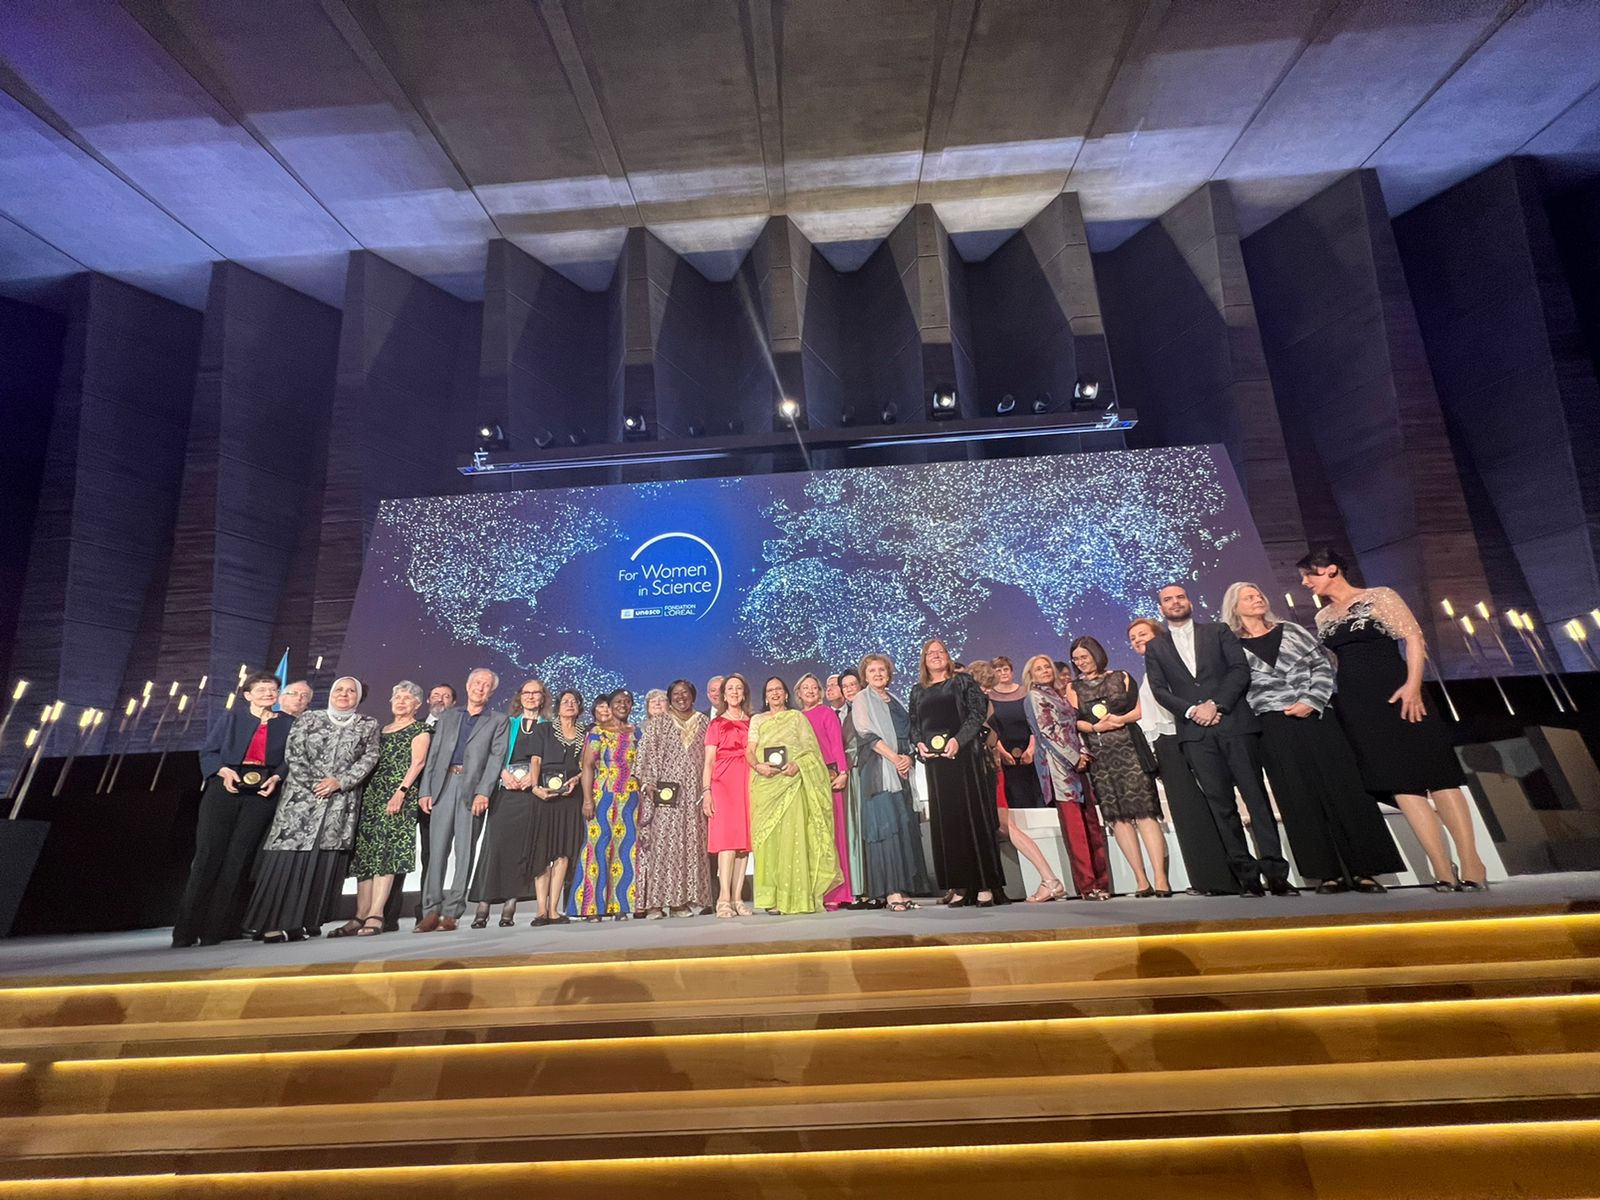 Gala de Laureates en la Unesco. Las mejores 15 científicas del mundo reciben el premio edición XXIV en la ciudad luz L'Oréal - Unesco por las mujeres en la ciencia. Son 5 científicas por año y la pandemia acumuló los lauros de 2020, 2021 y 2022 